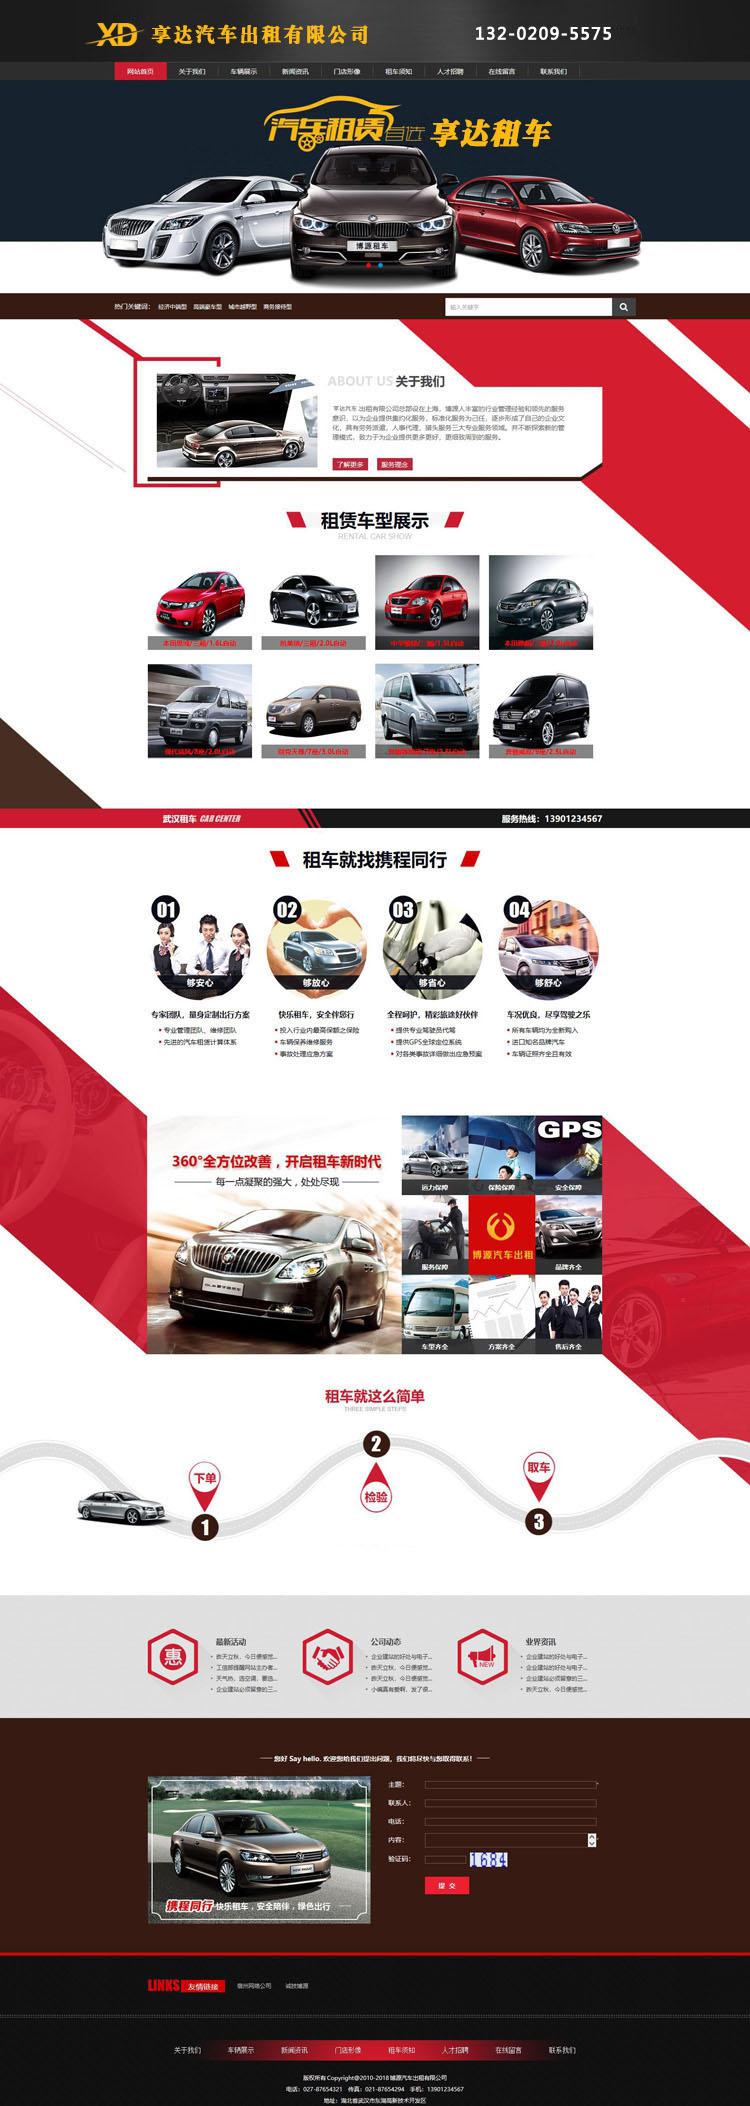 海南企业网站建设 | **制作汽车零部件供应商网站